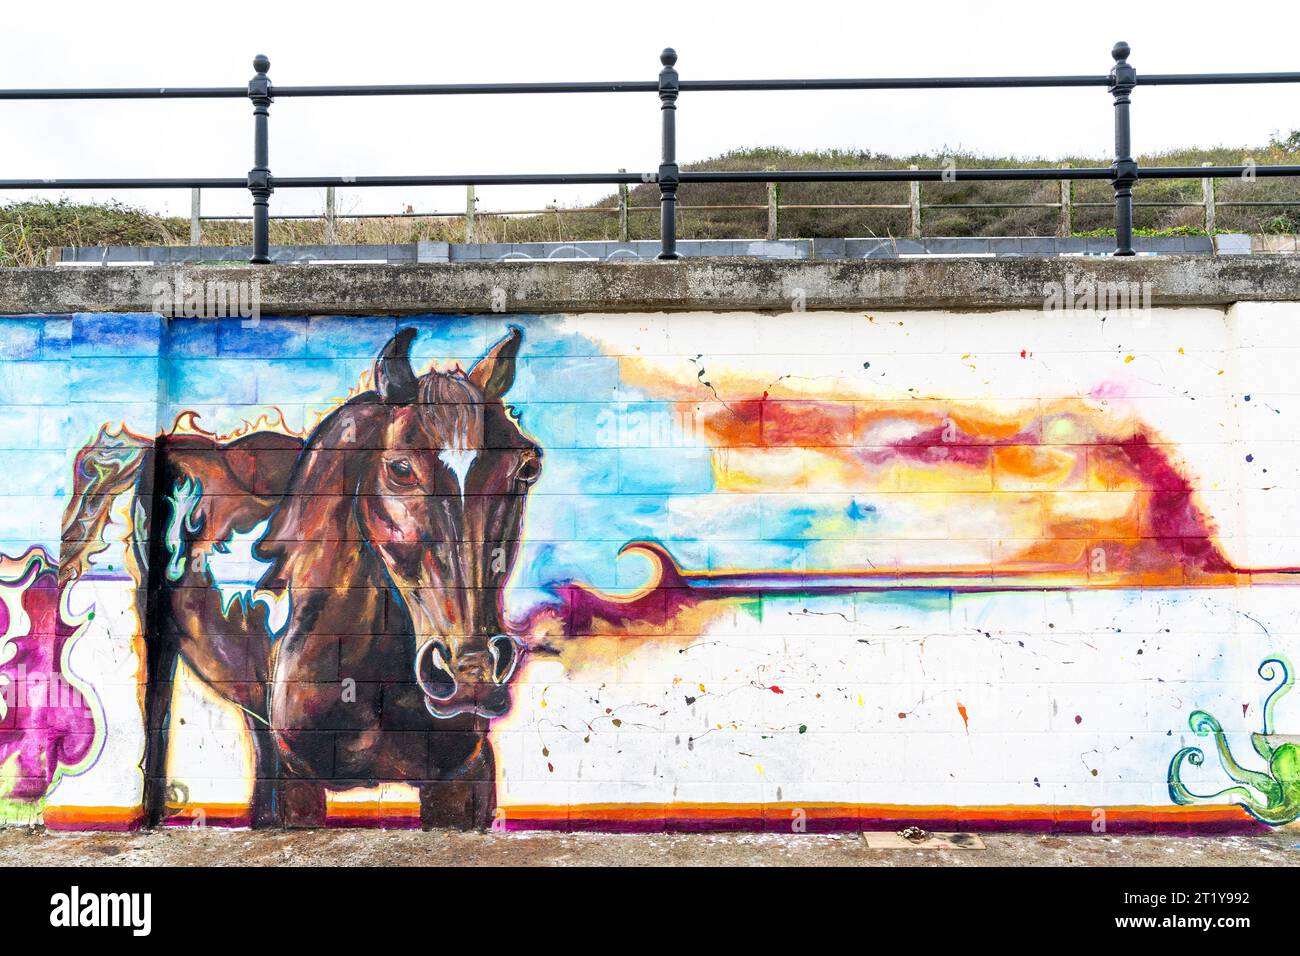 Graffiti en bord de mer sur une digue à Herne Bay sous la forme d'une peinture très détaillée d'un cheval avec des trous transparents, face au spectateur. Peint par une jeune femme inconnue, le tableau fait partie d'une série liée par un horizon commun le long du mur. Banque D'Images